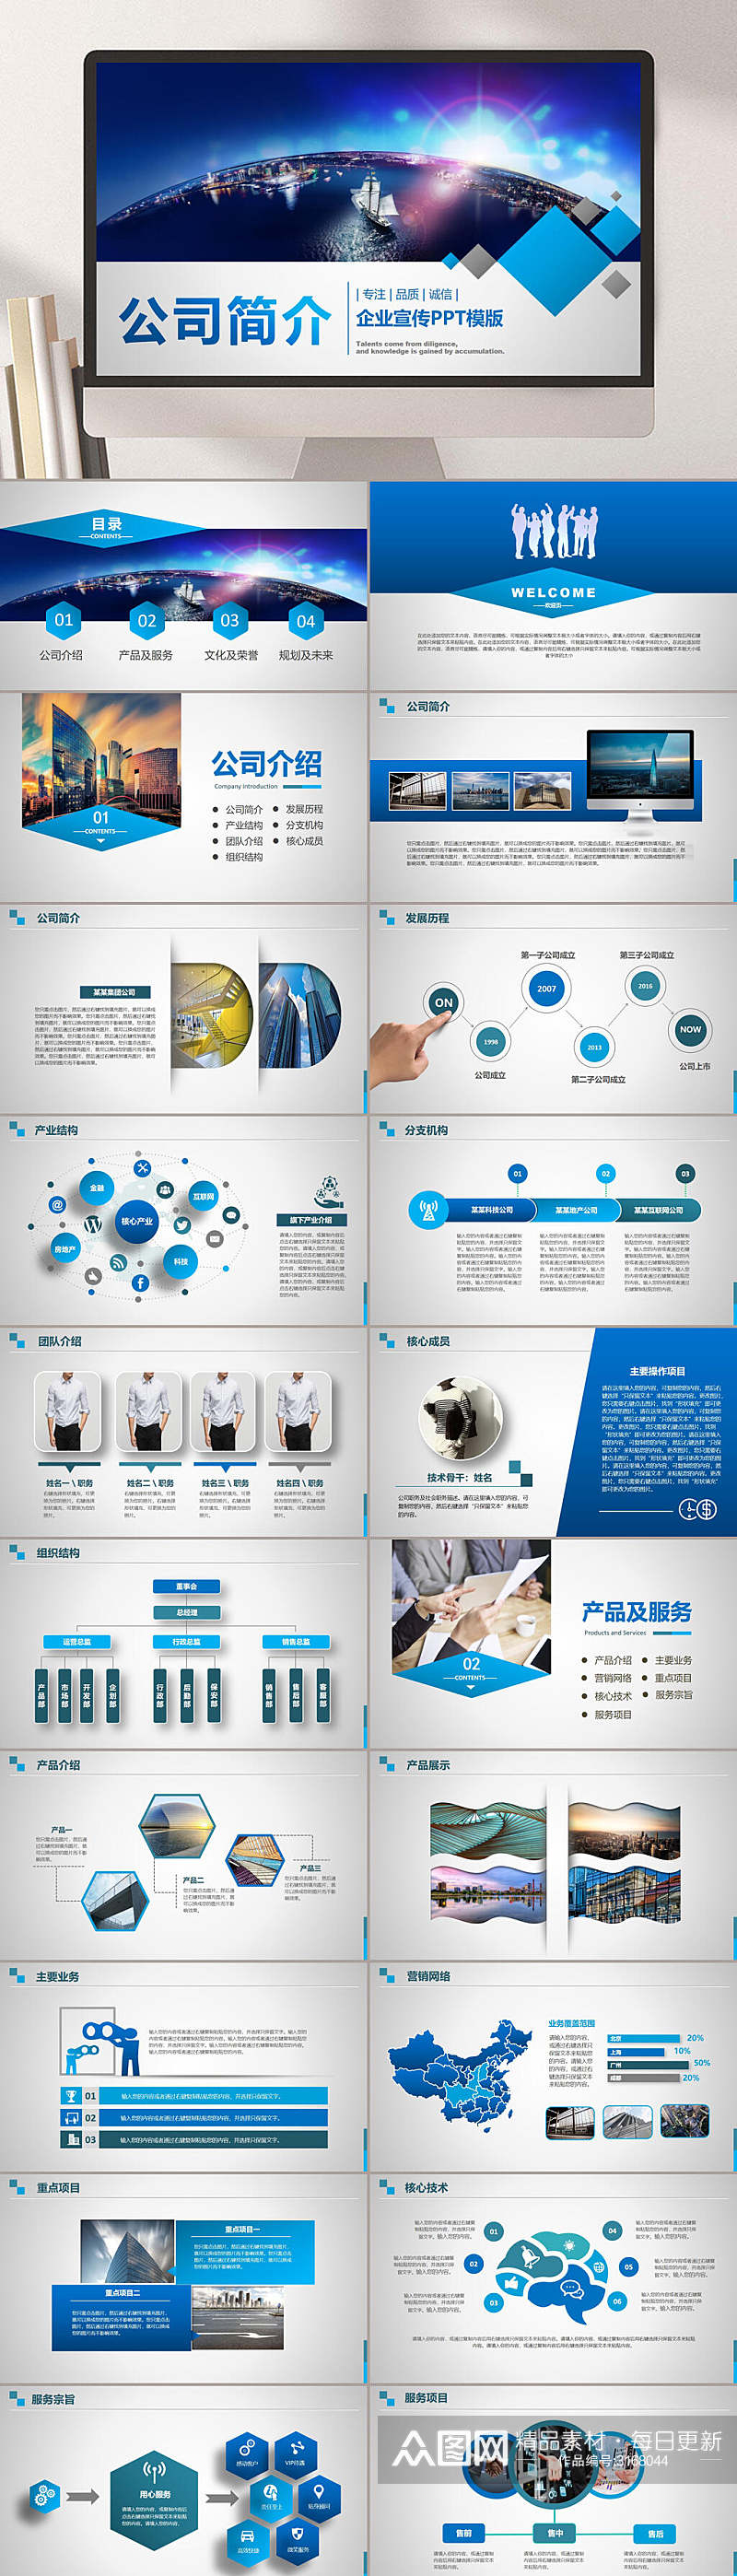 蓝色科技感企业宣传介绍画册PPT素材